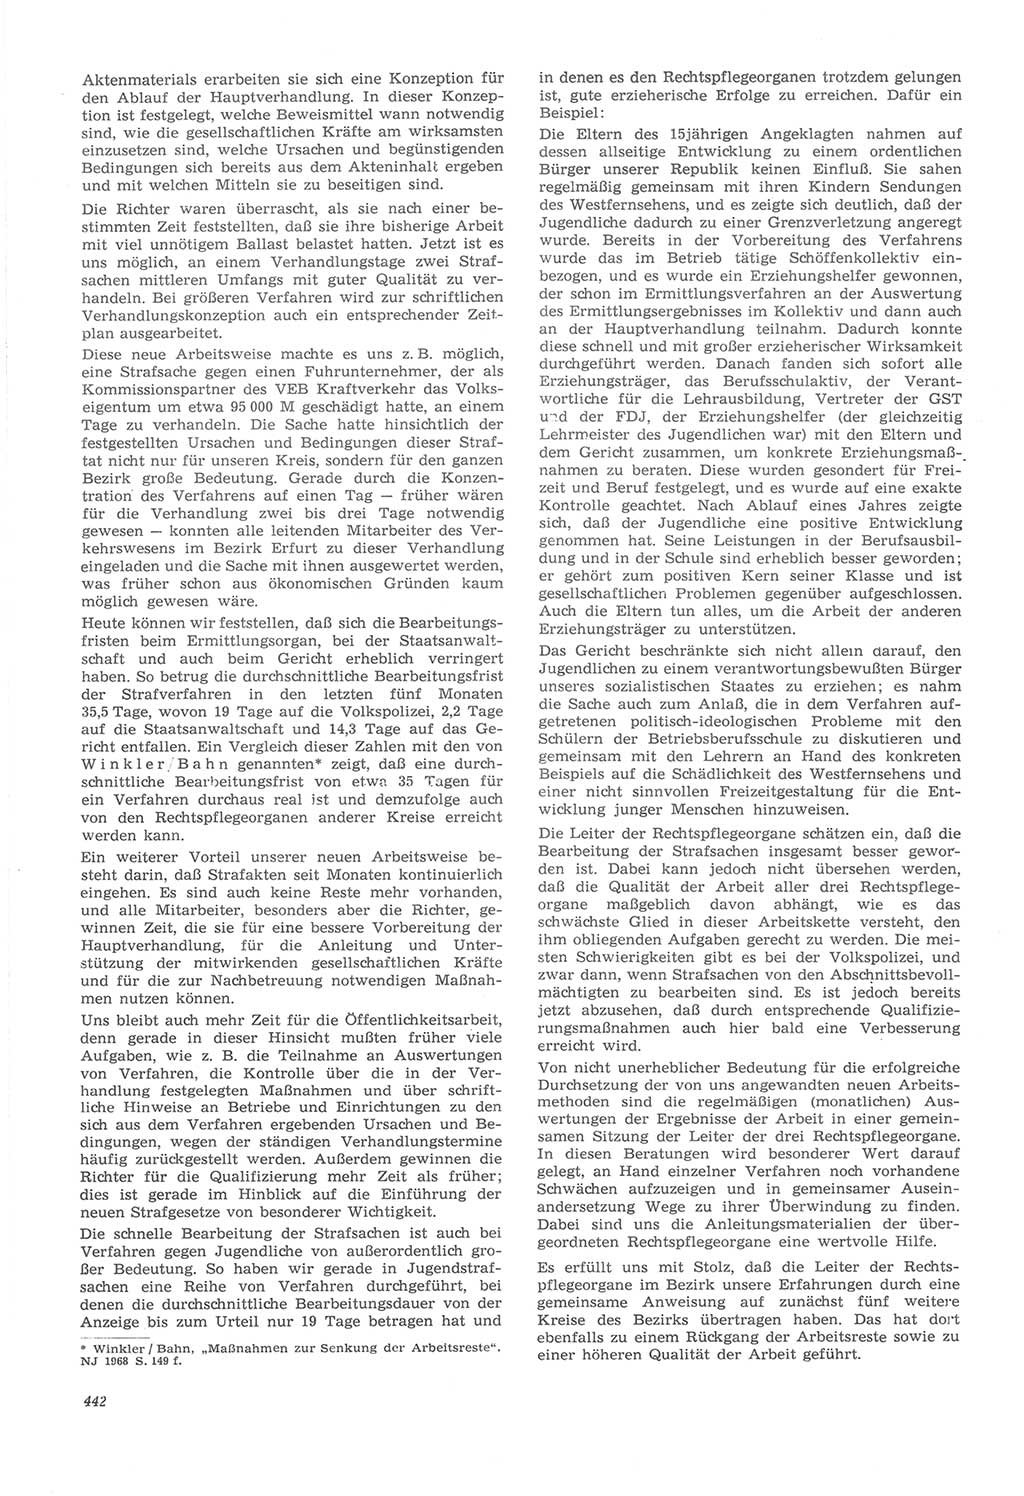 Neue Justiz (NJ), Zeitschrift für Recht und Rechtswissenschaft [Deutsche Demokratische Republik (DDR)], 22. Jahrgang 1968, Seite 442 (NJ DDR 1968, S. 442)